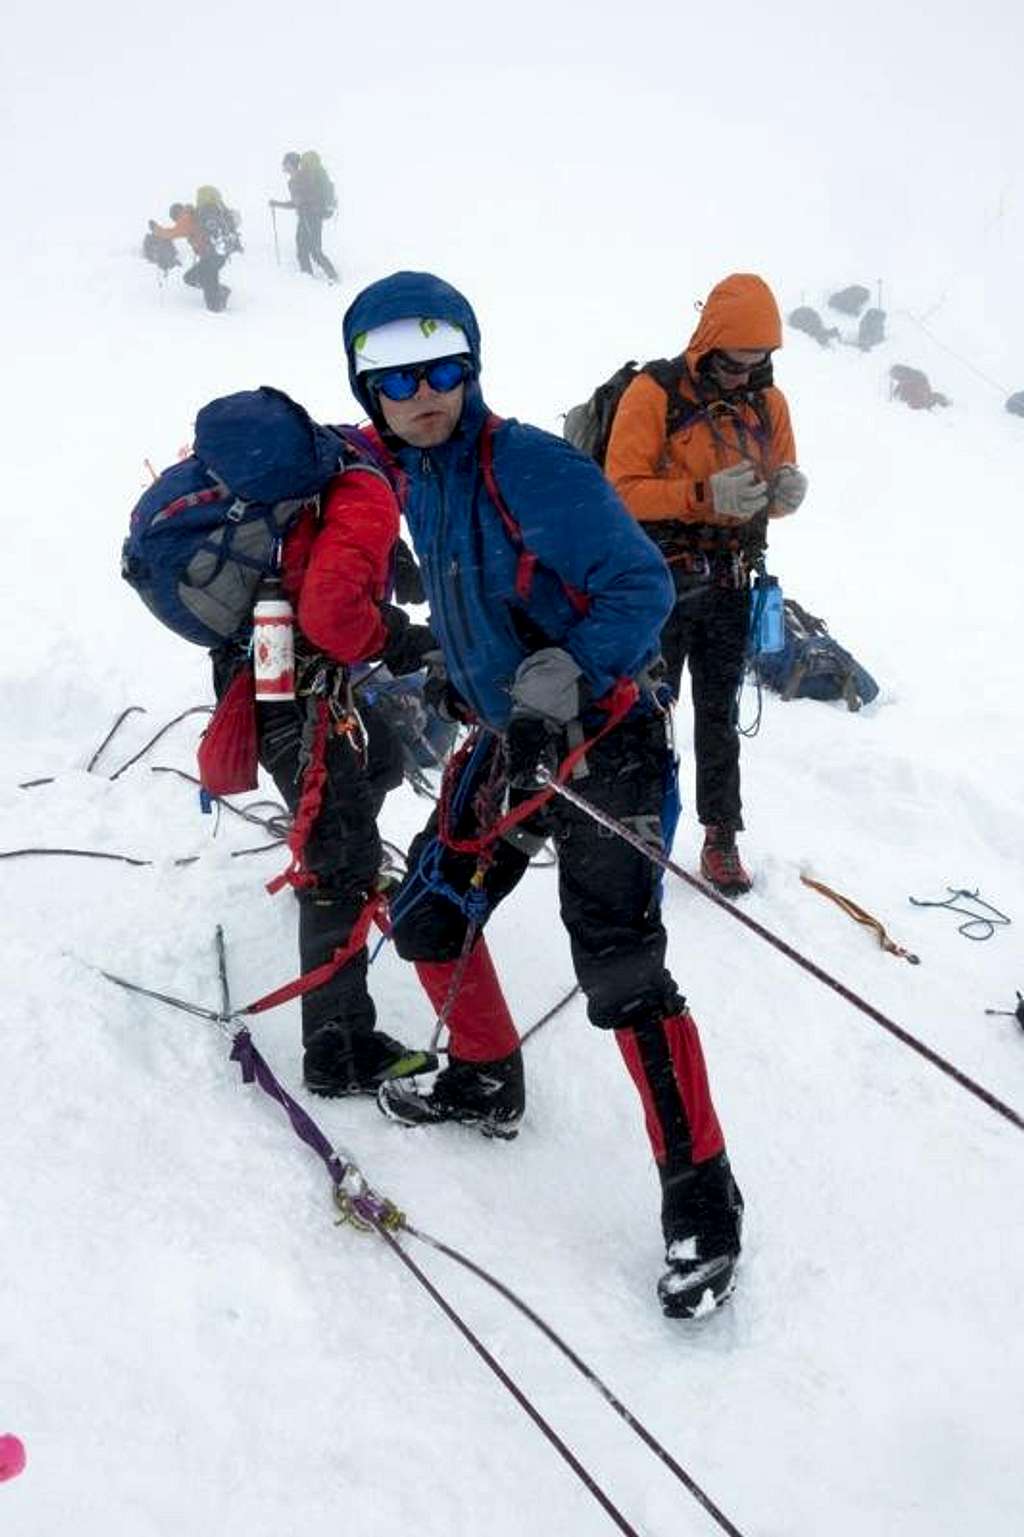 Crevasse rescue practice at Mount Rainier